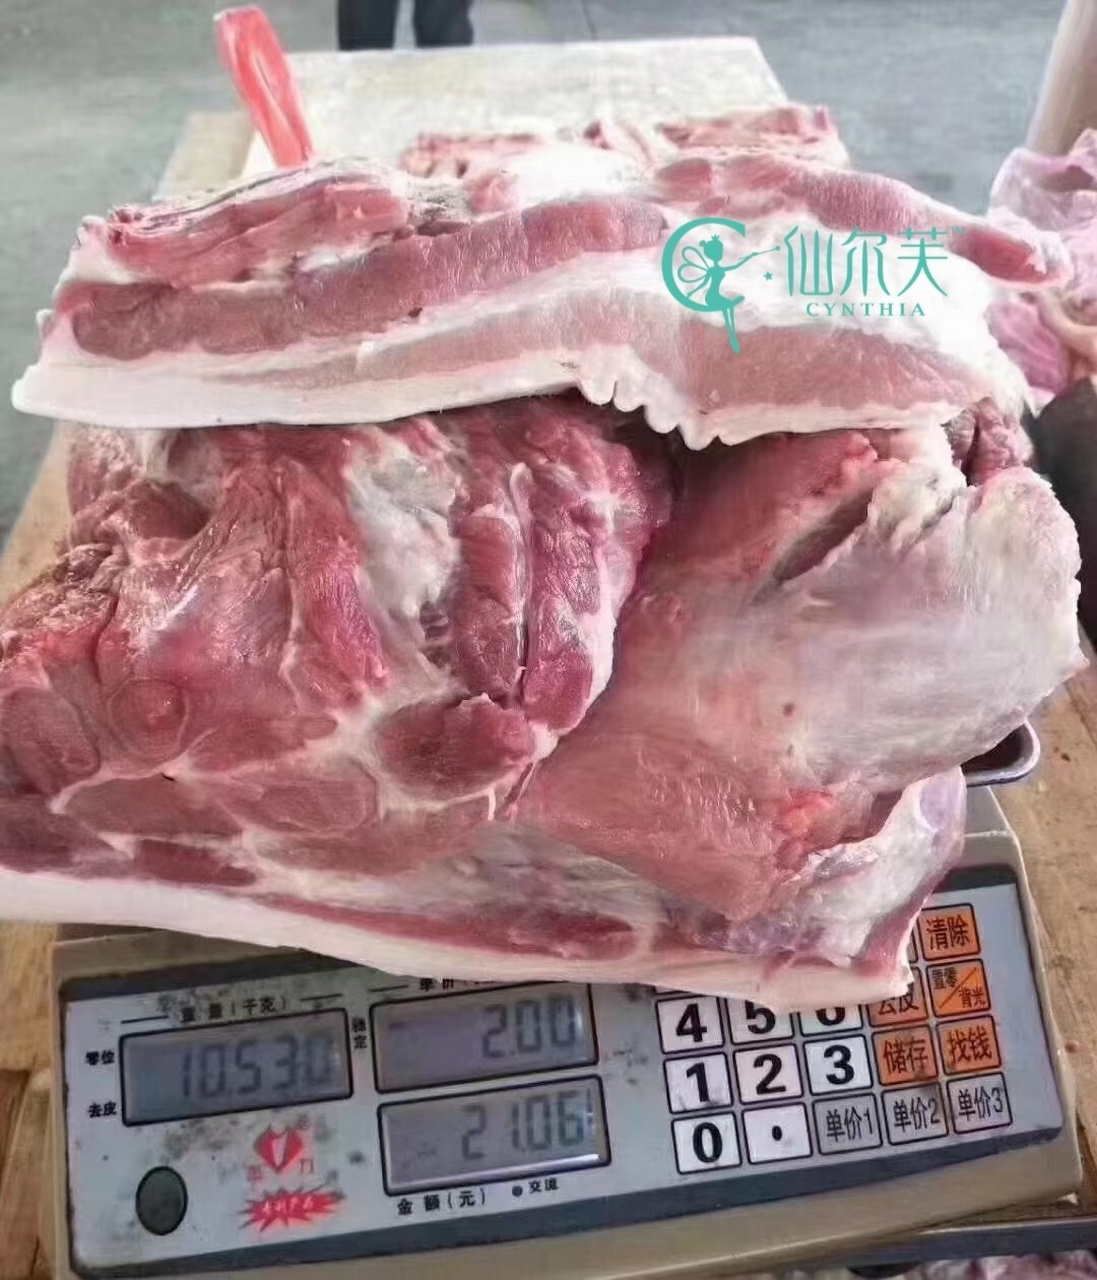 20斤肉多大一块图片